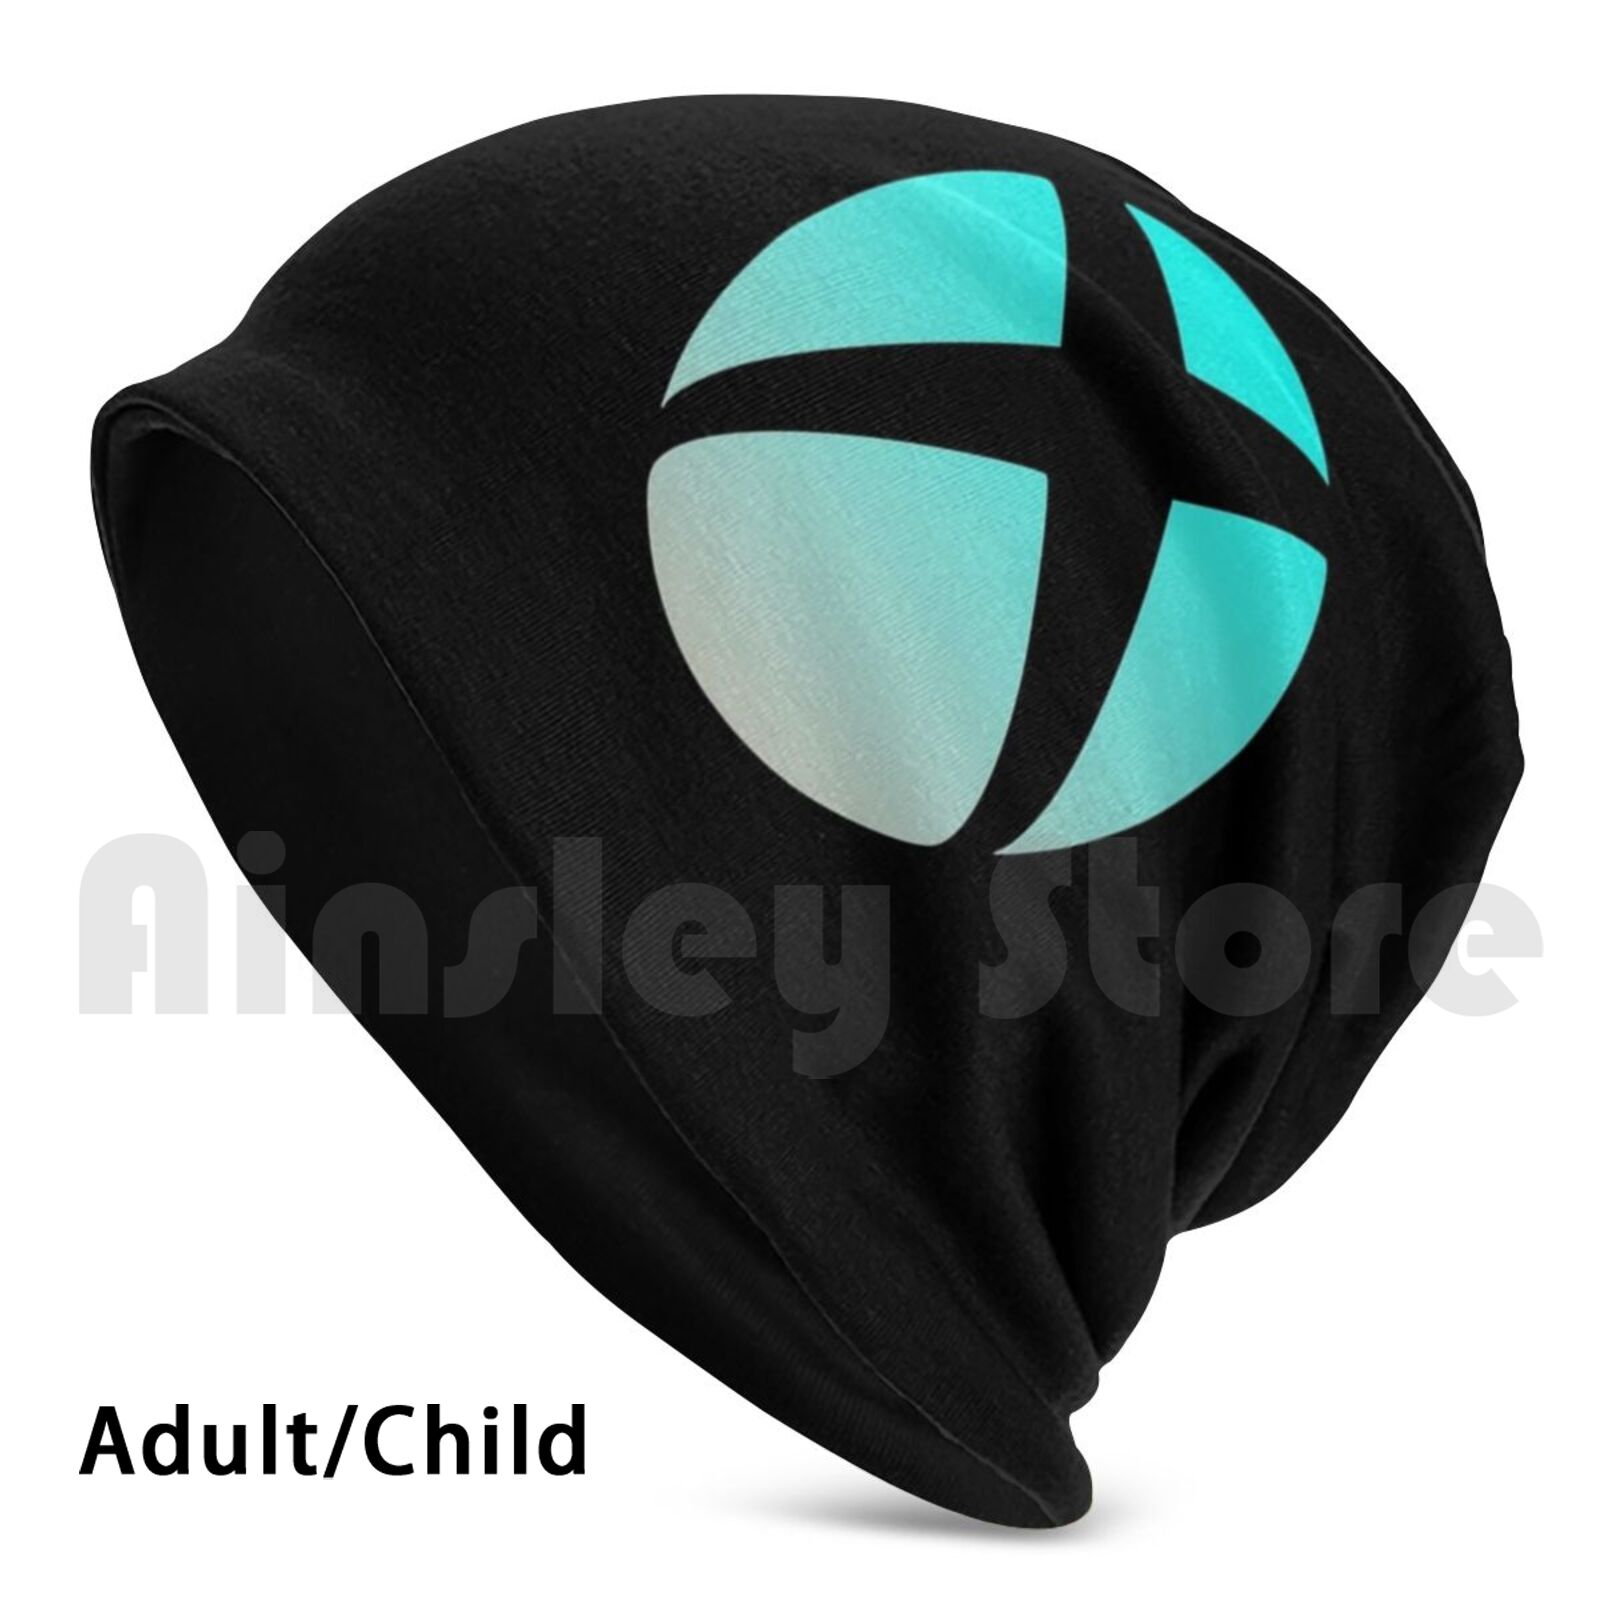 Bonnet-tricot-avec-Logo-d-grad-Xbox-2144-bonnet-imprim-jaune-Microsoft-Xbox-One-Xbox-X